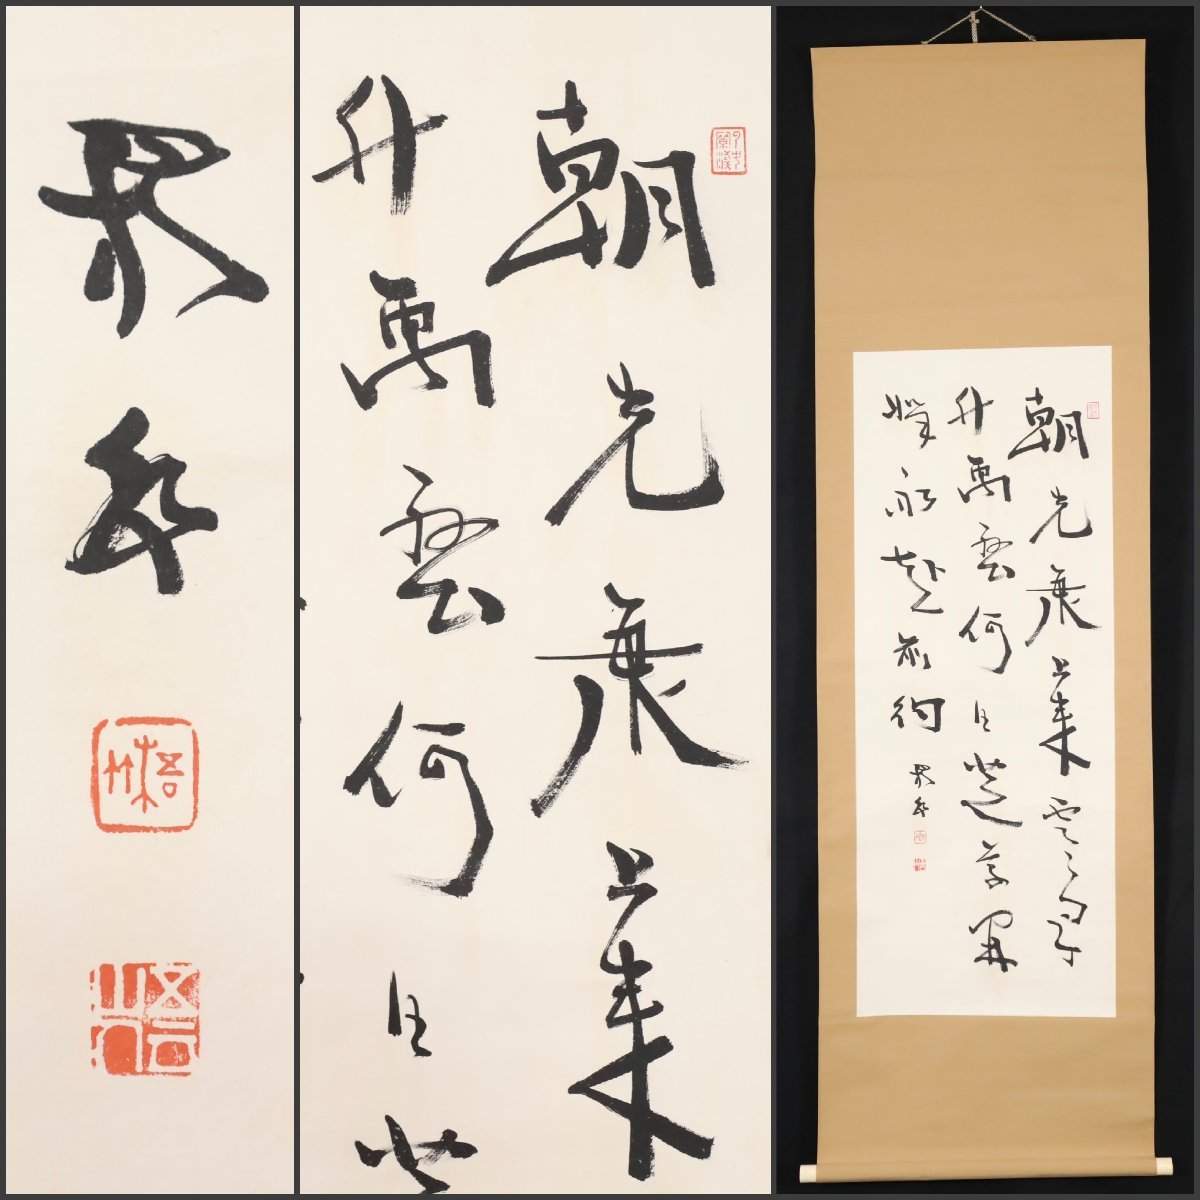 【模写】吉】8423 中林梧竹 書 明治の三筆 書家 中国画 掛軸 掛け軸 骨董品